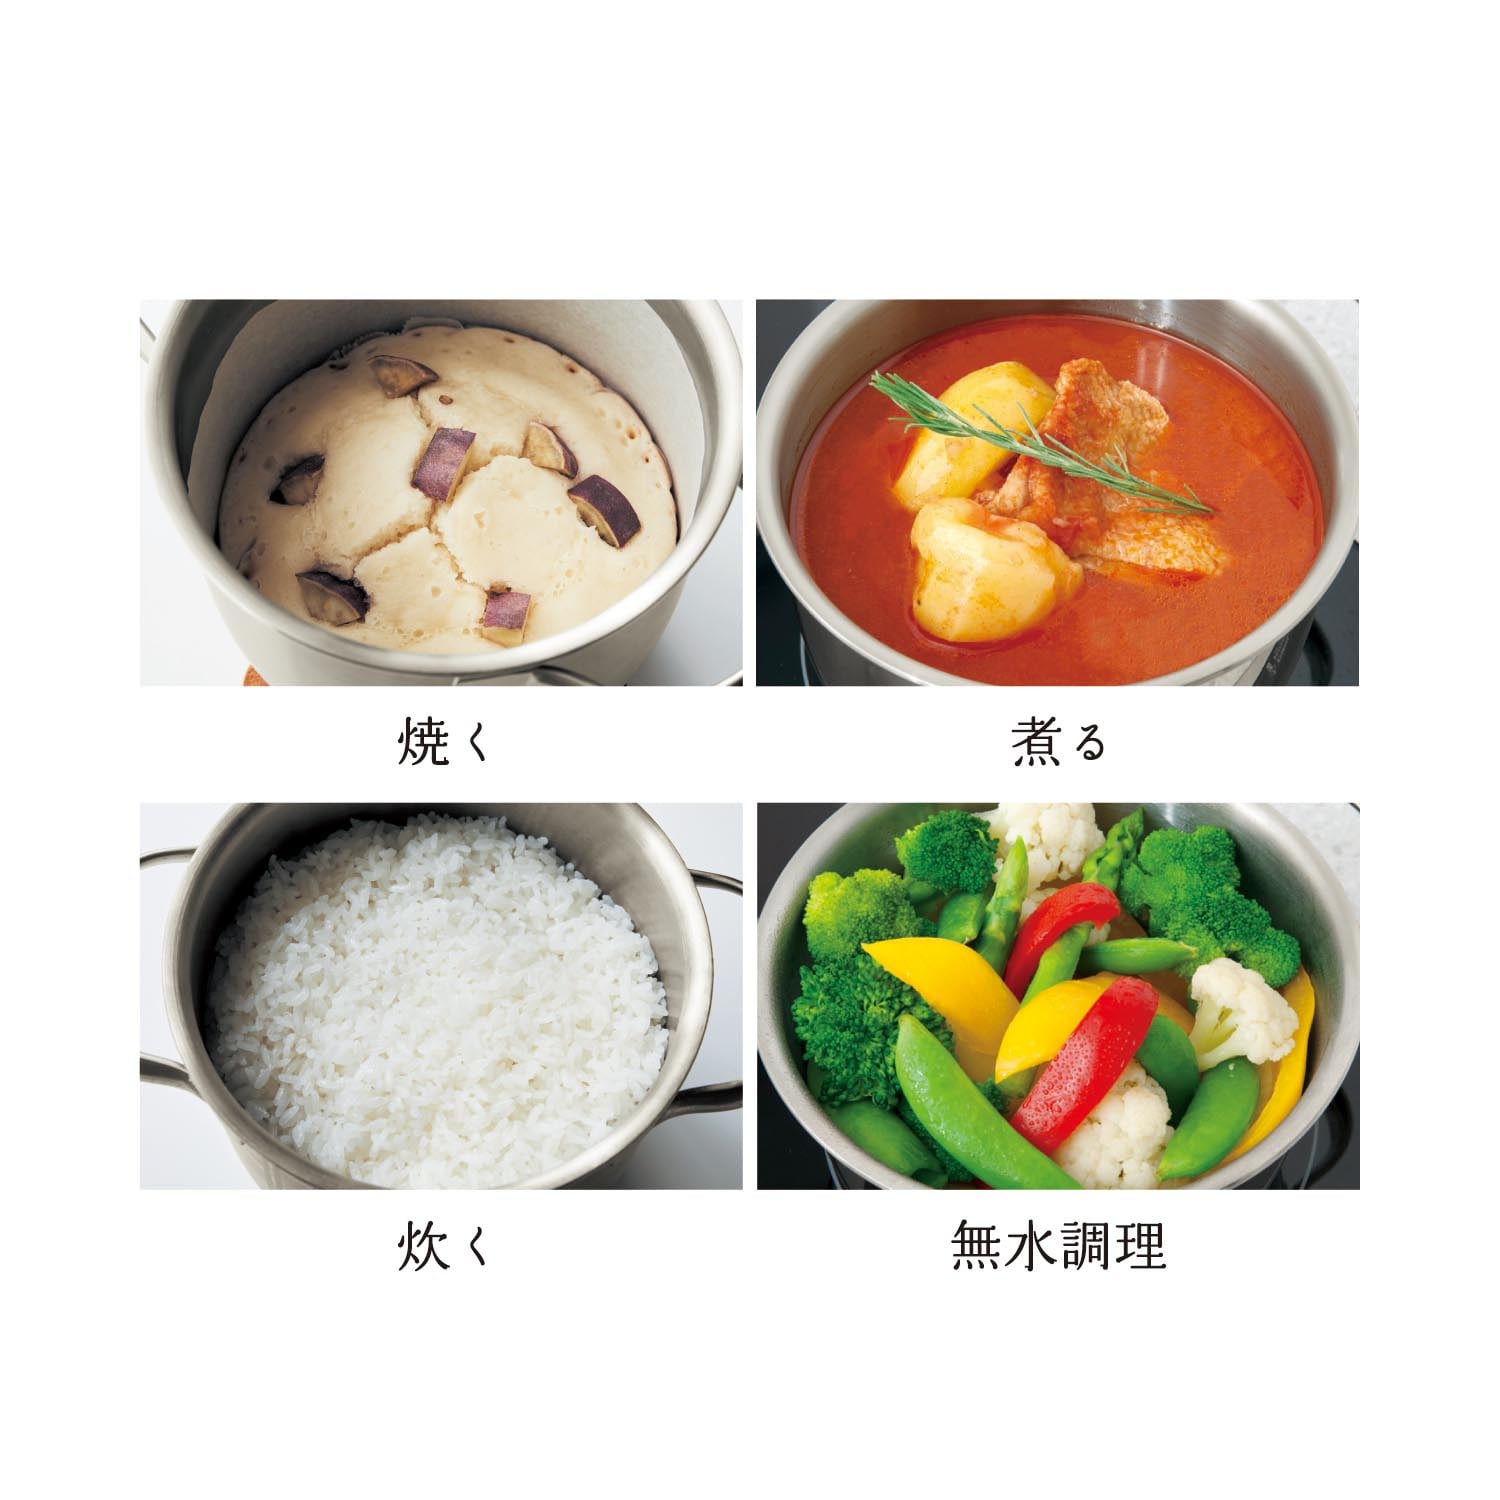 柔らかな質感の less Water D55-153 cooking 千趣会 無水鍋料理 